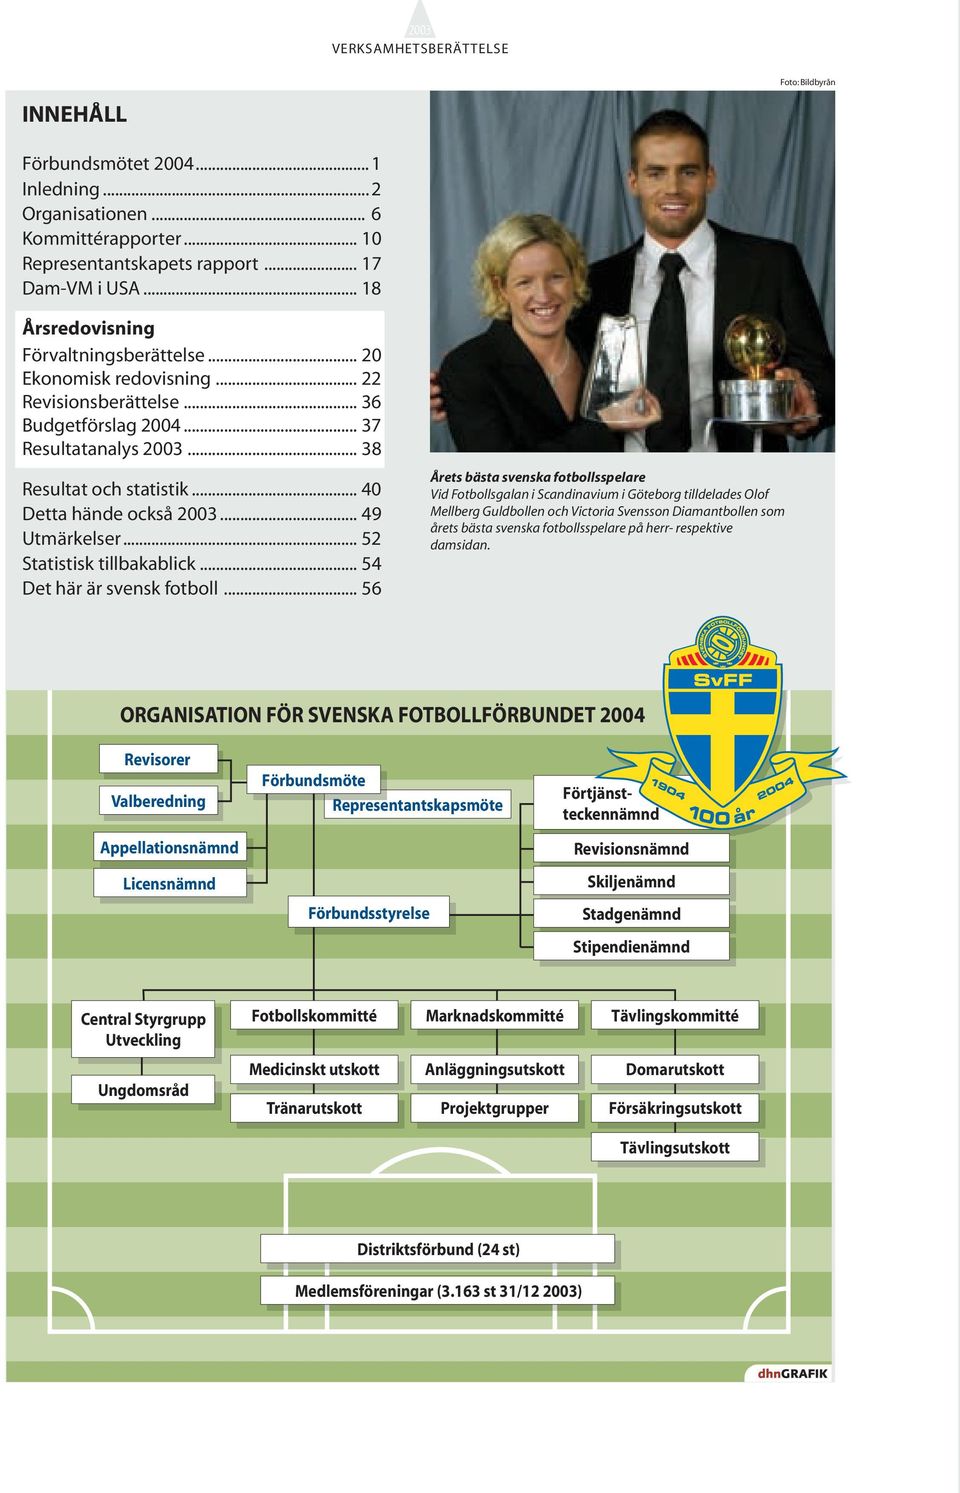 .. 40 Detta hände också 2003... 49 Utmärkelser... 52 Statistisk tillbakablick... 54 Det här är svensk fotboll.